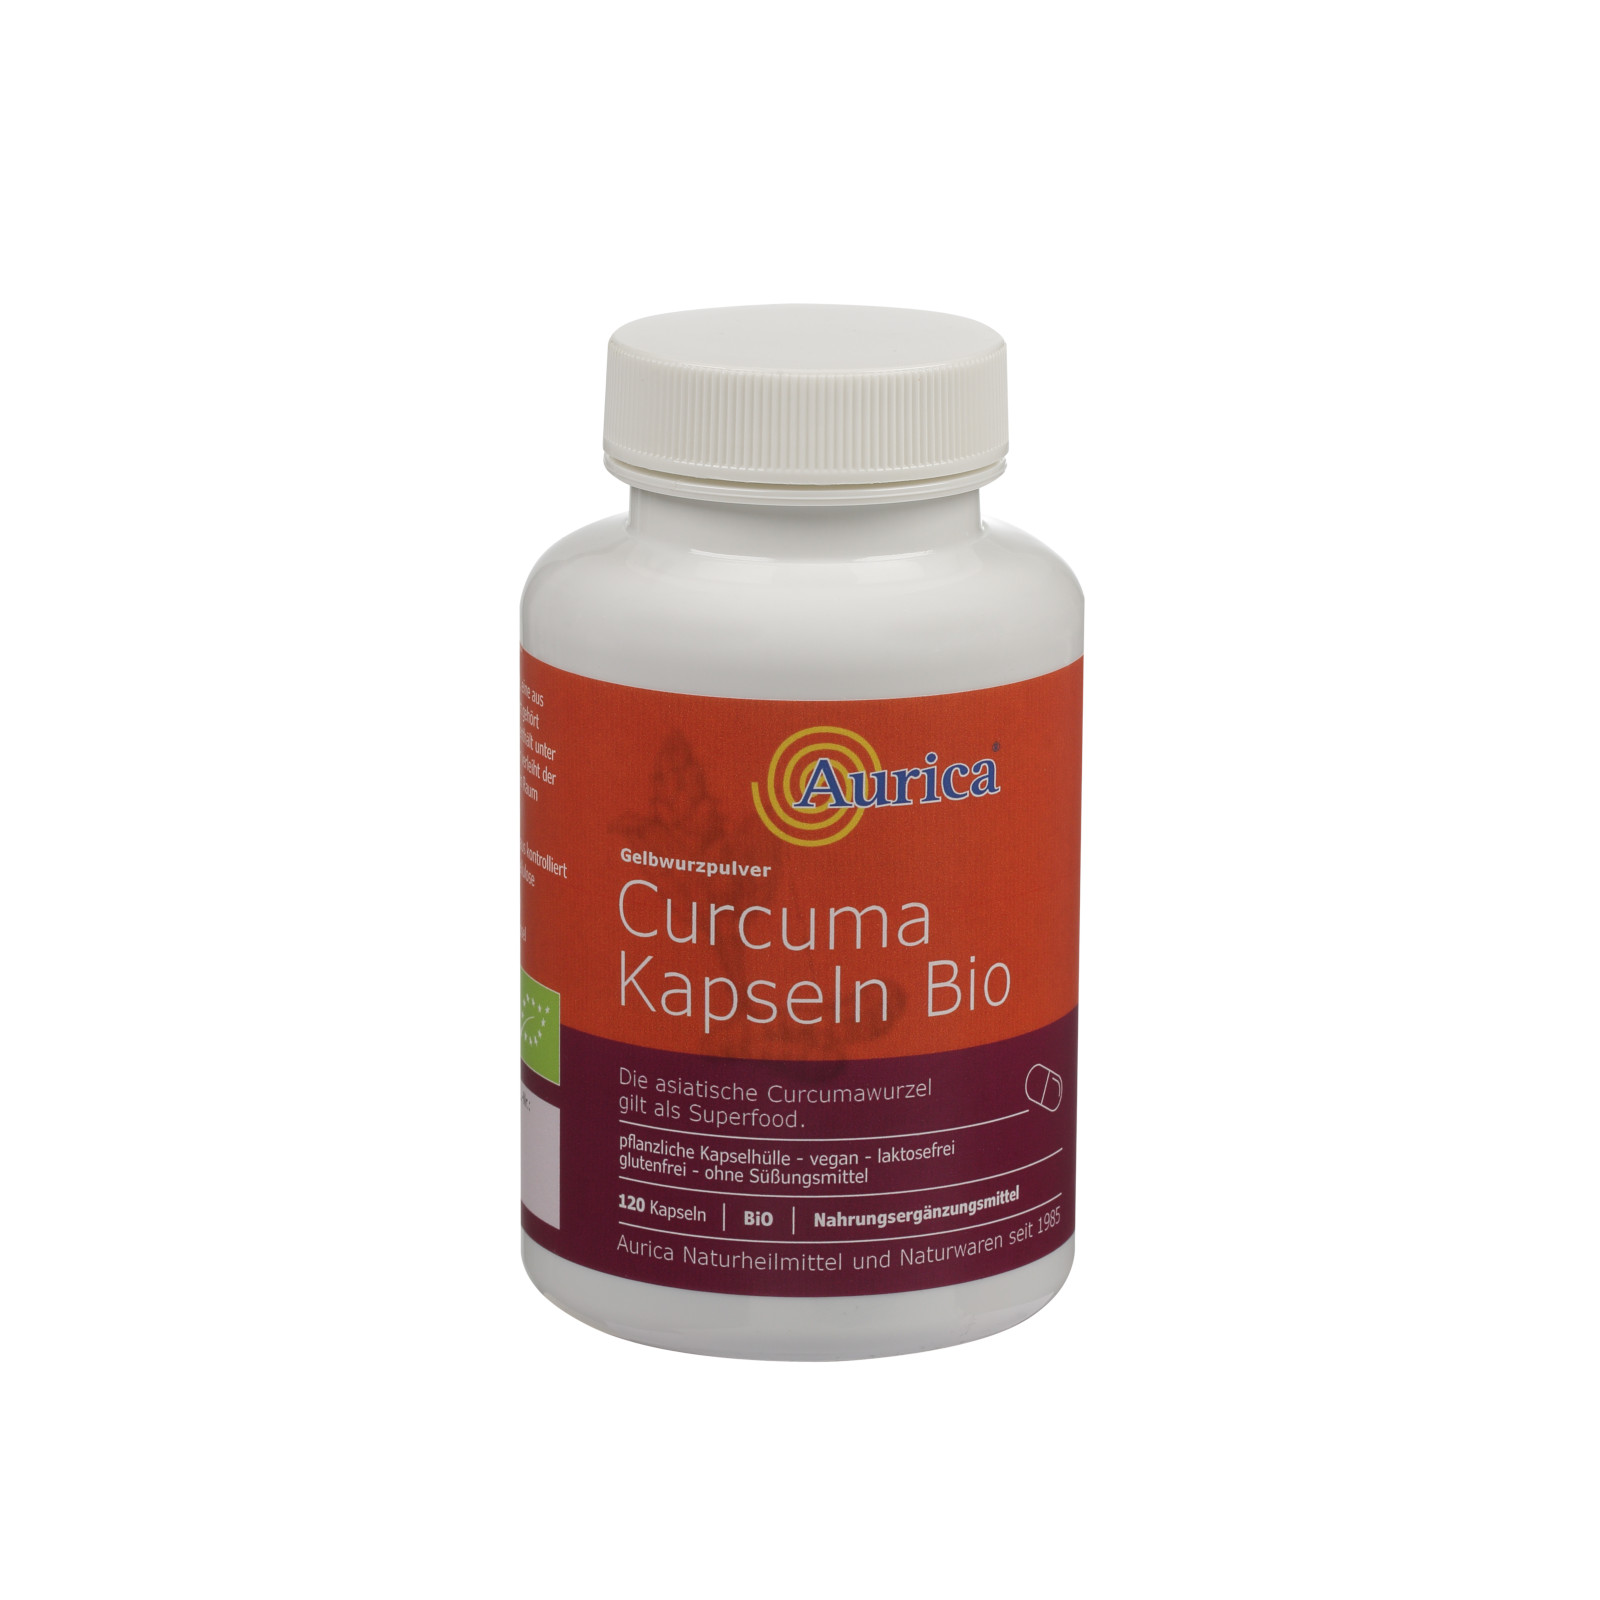 Curcuma Kapseln Bio 120 St. à 500 mg